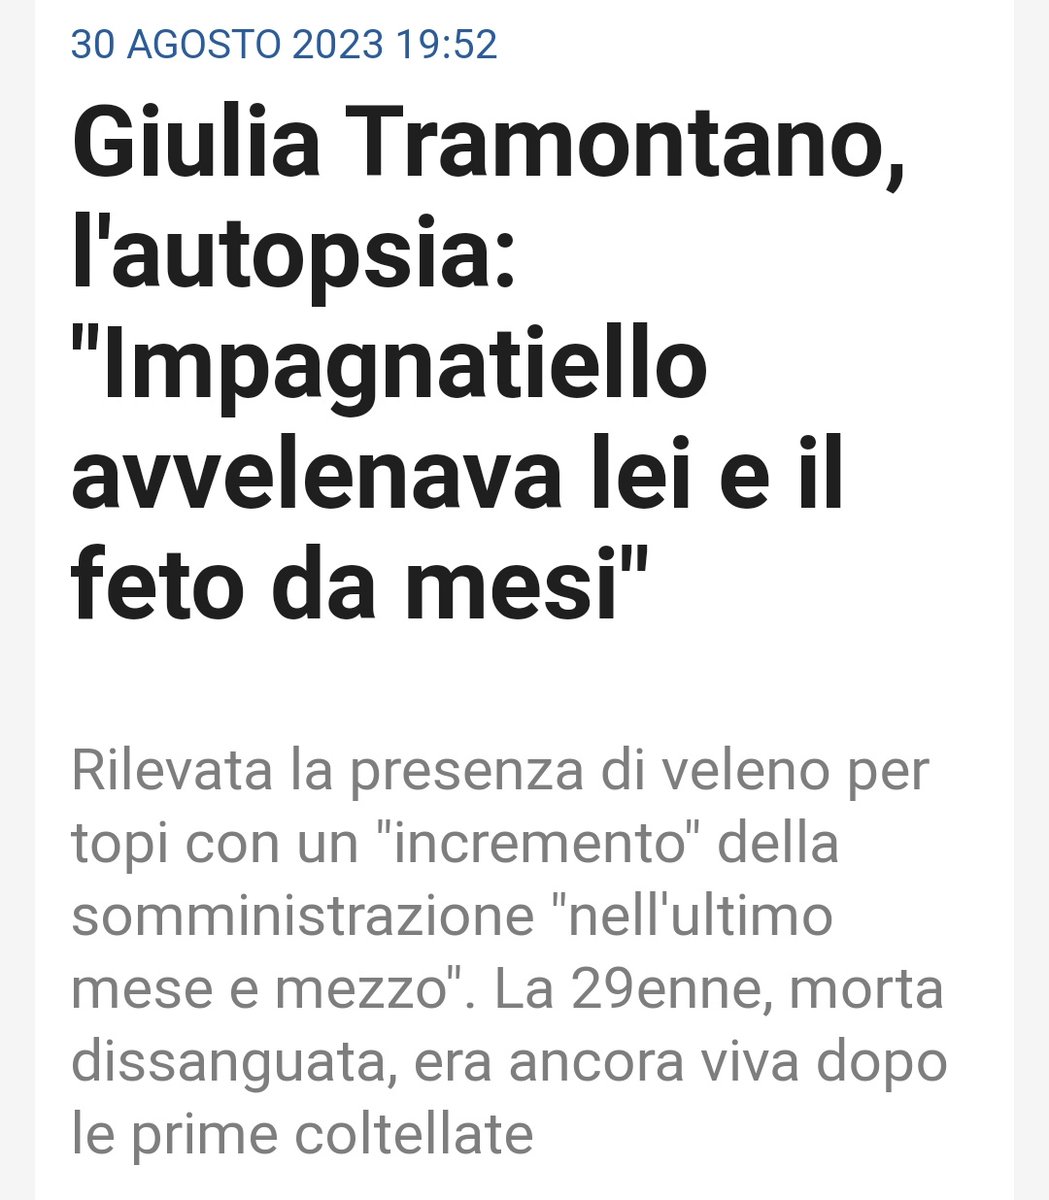 Ergastolo, senza se e senza ma.
#Impagnatiello

#GiuliaTramontano